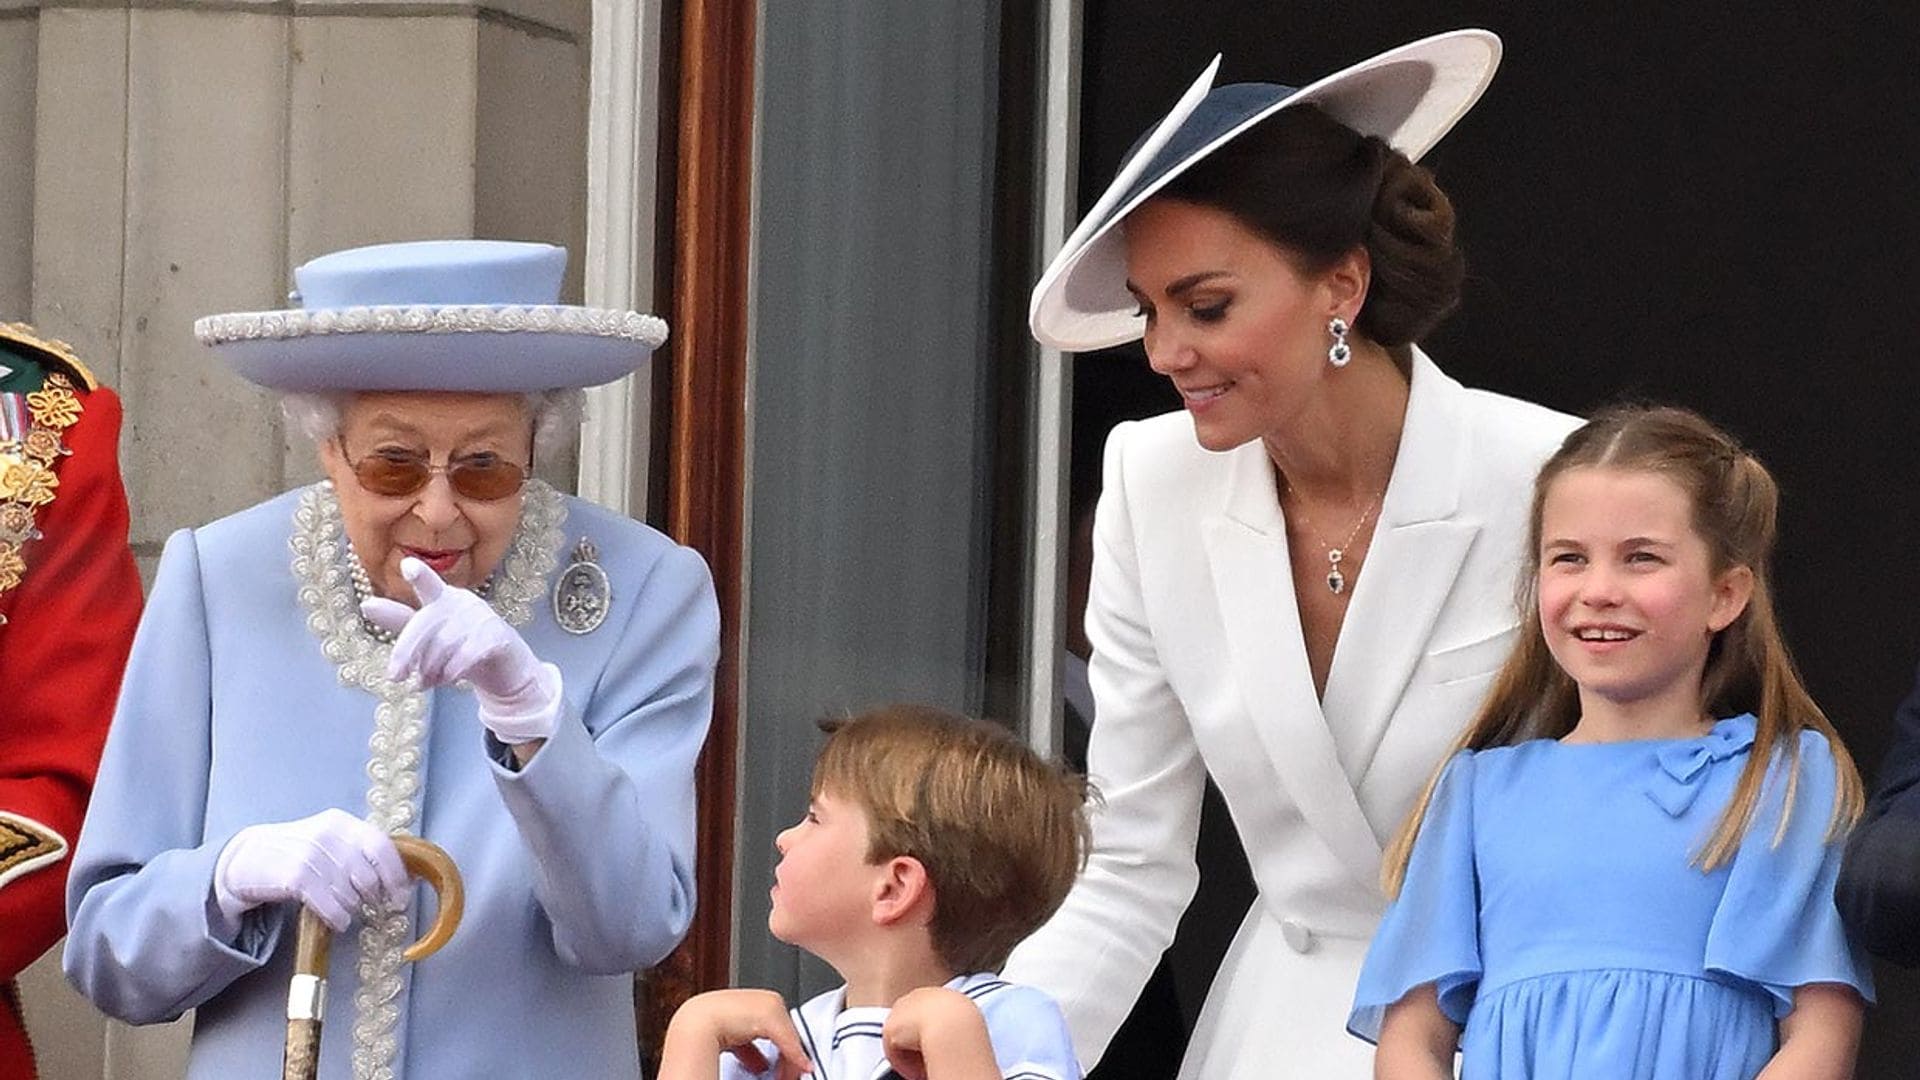 Caras de sorpresa y charlas con la Reina: los divertidos gestos de Louis de Cambridge